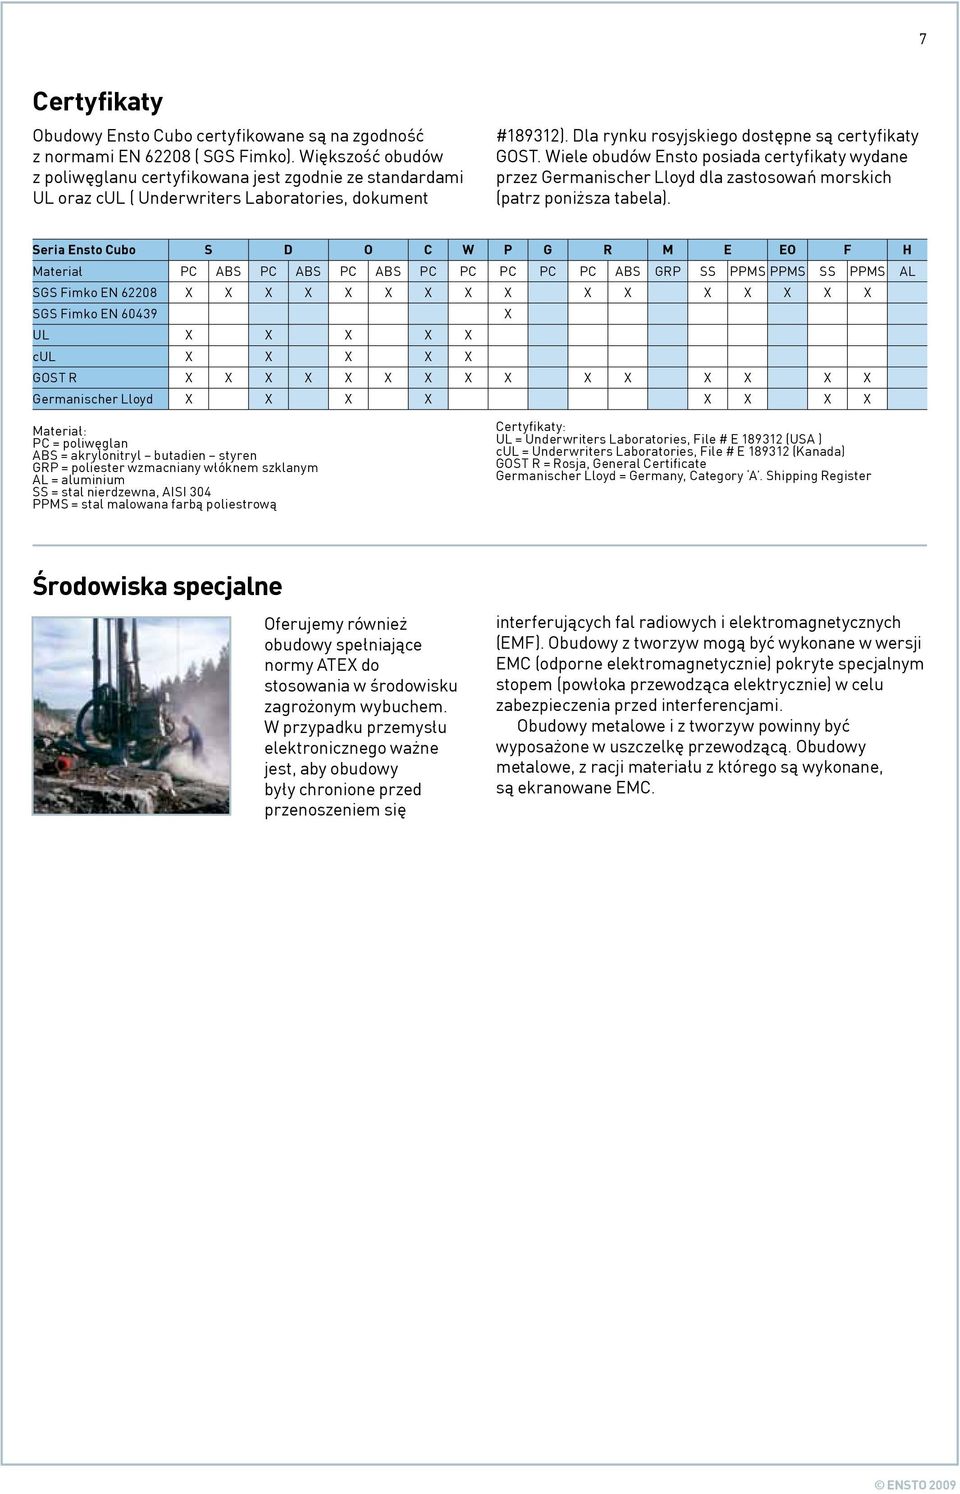 Wiele obudów Ensto posiada certyfikaty wydane przez Germanischer Lloyd dla zastosowań morskich (patrz poniższa tabela).